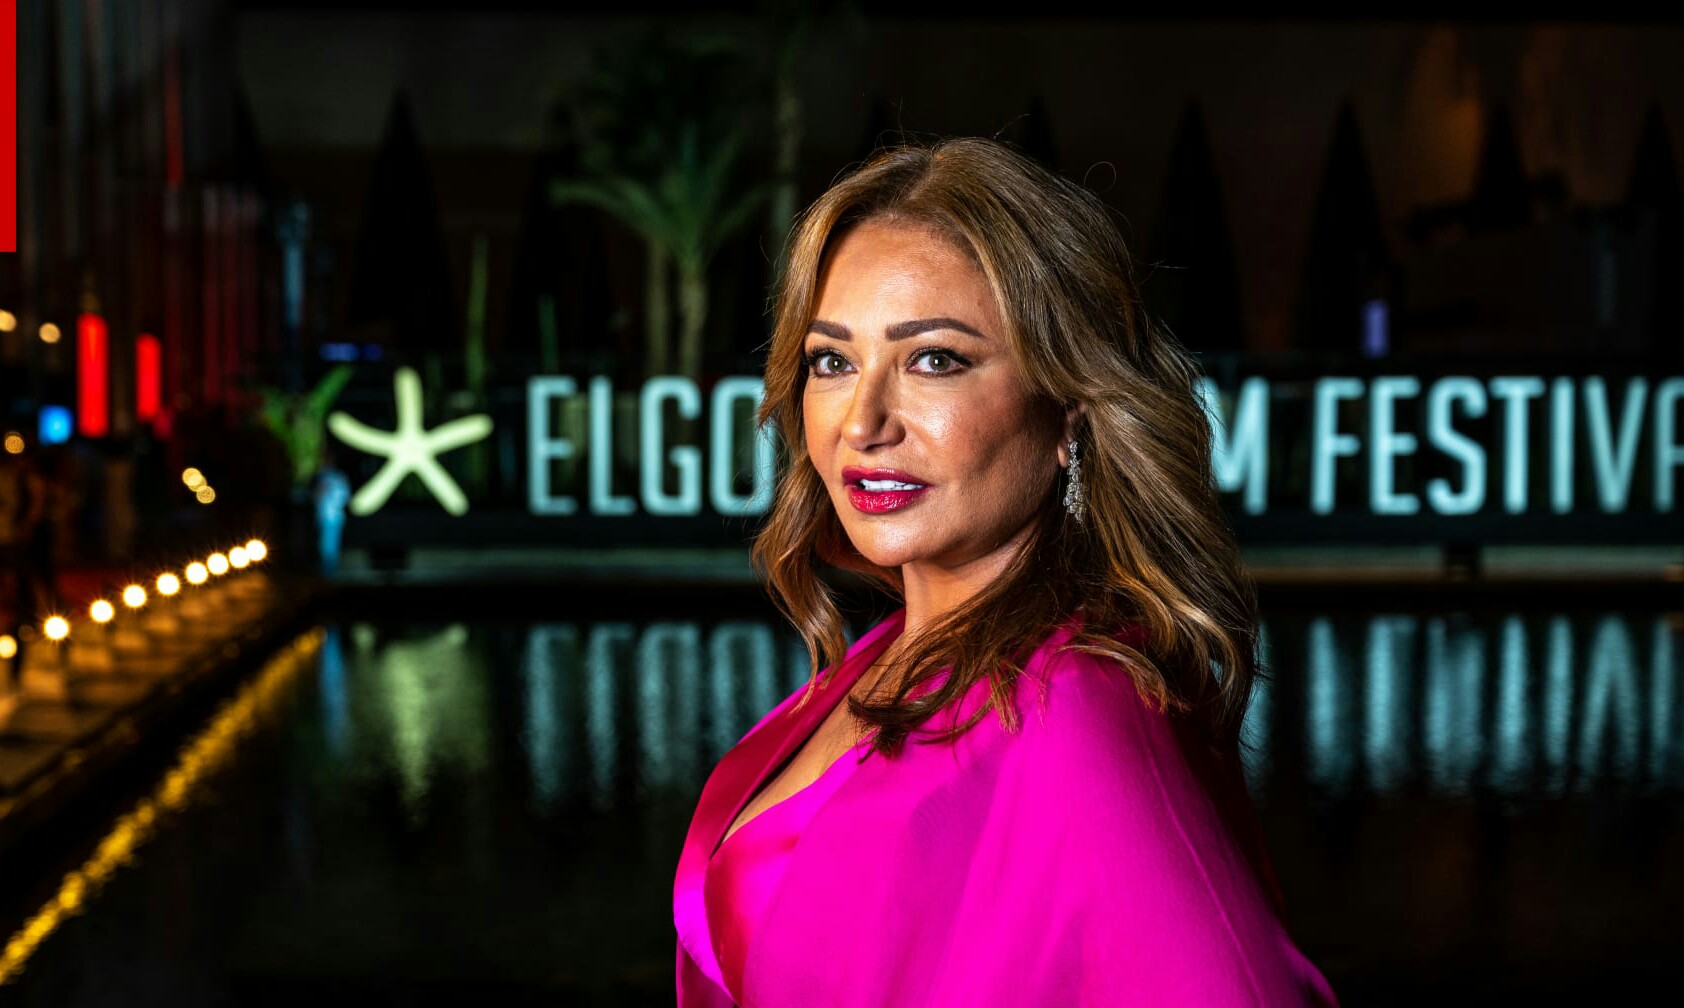 المجلس الأعلى للإعلام في مصر يوقف بث أول حلقة من مسلسل “دنيا تانية” في رمضان